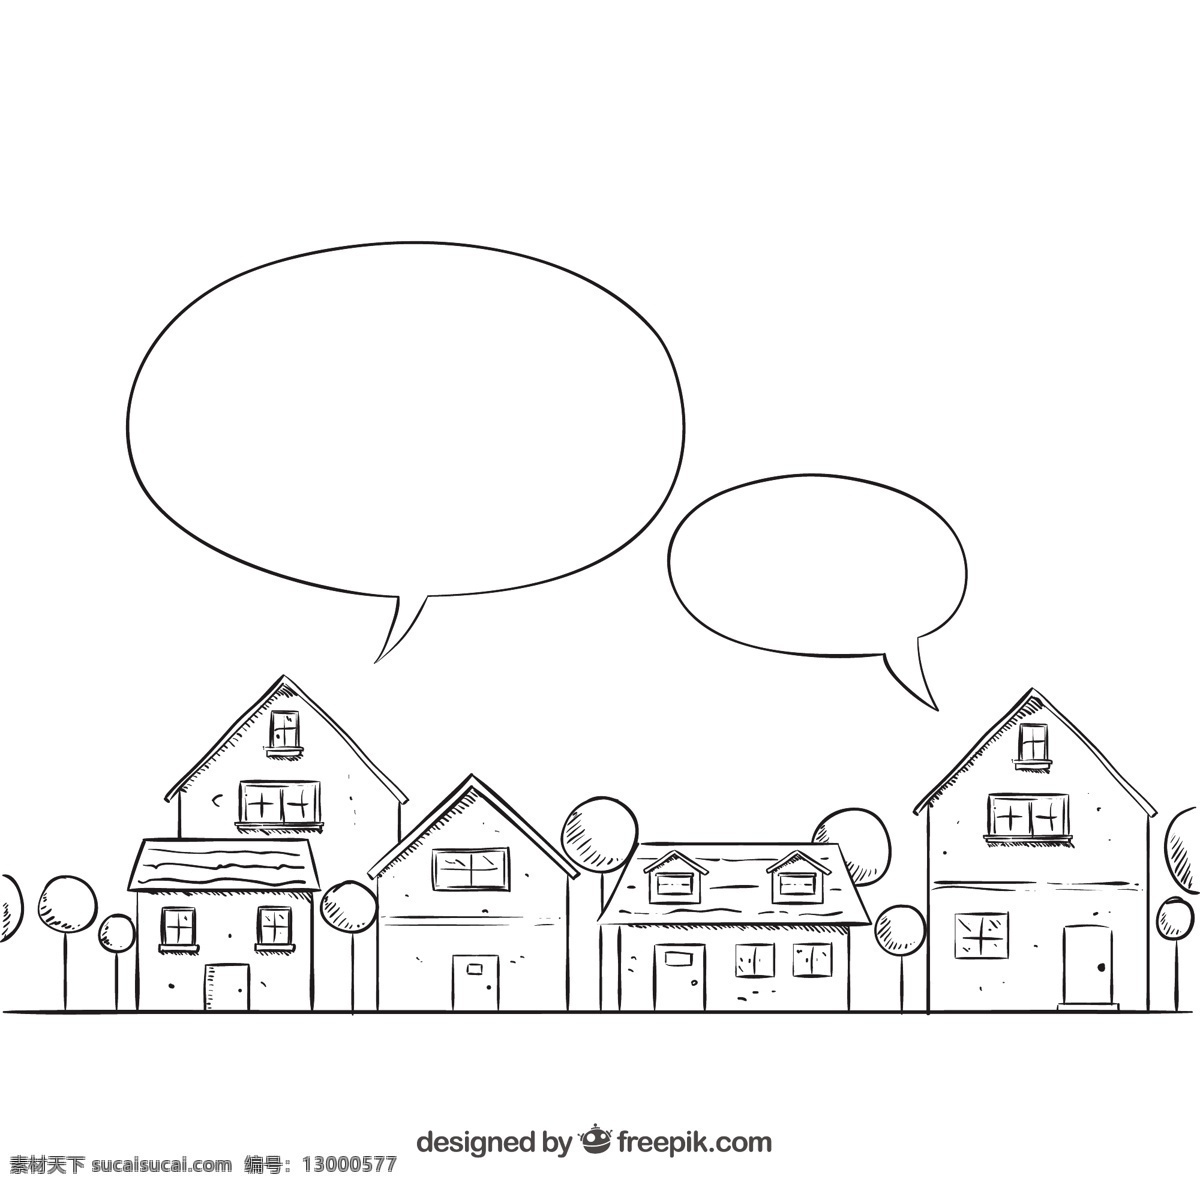 粗略 邻居 讲话 泡沫 房子 一方面 国内 气泡 手绘 绘画 插图 语音 房屋 财产 言语泡沫 绘制 附近 真实 状态 粗略的 真实的 住宅 白色